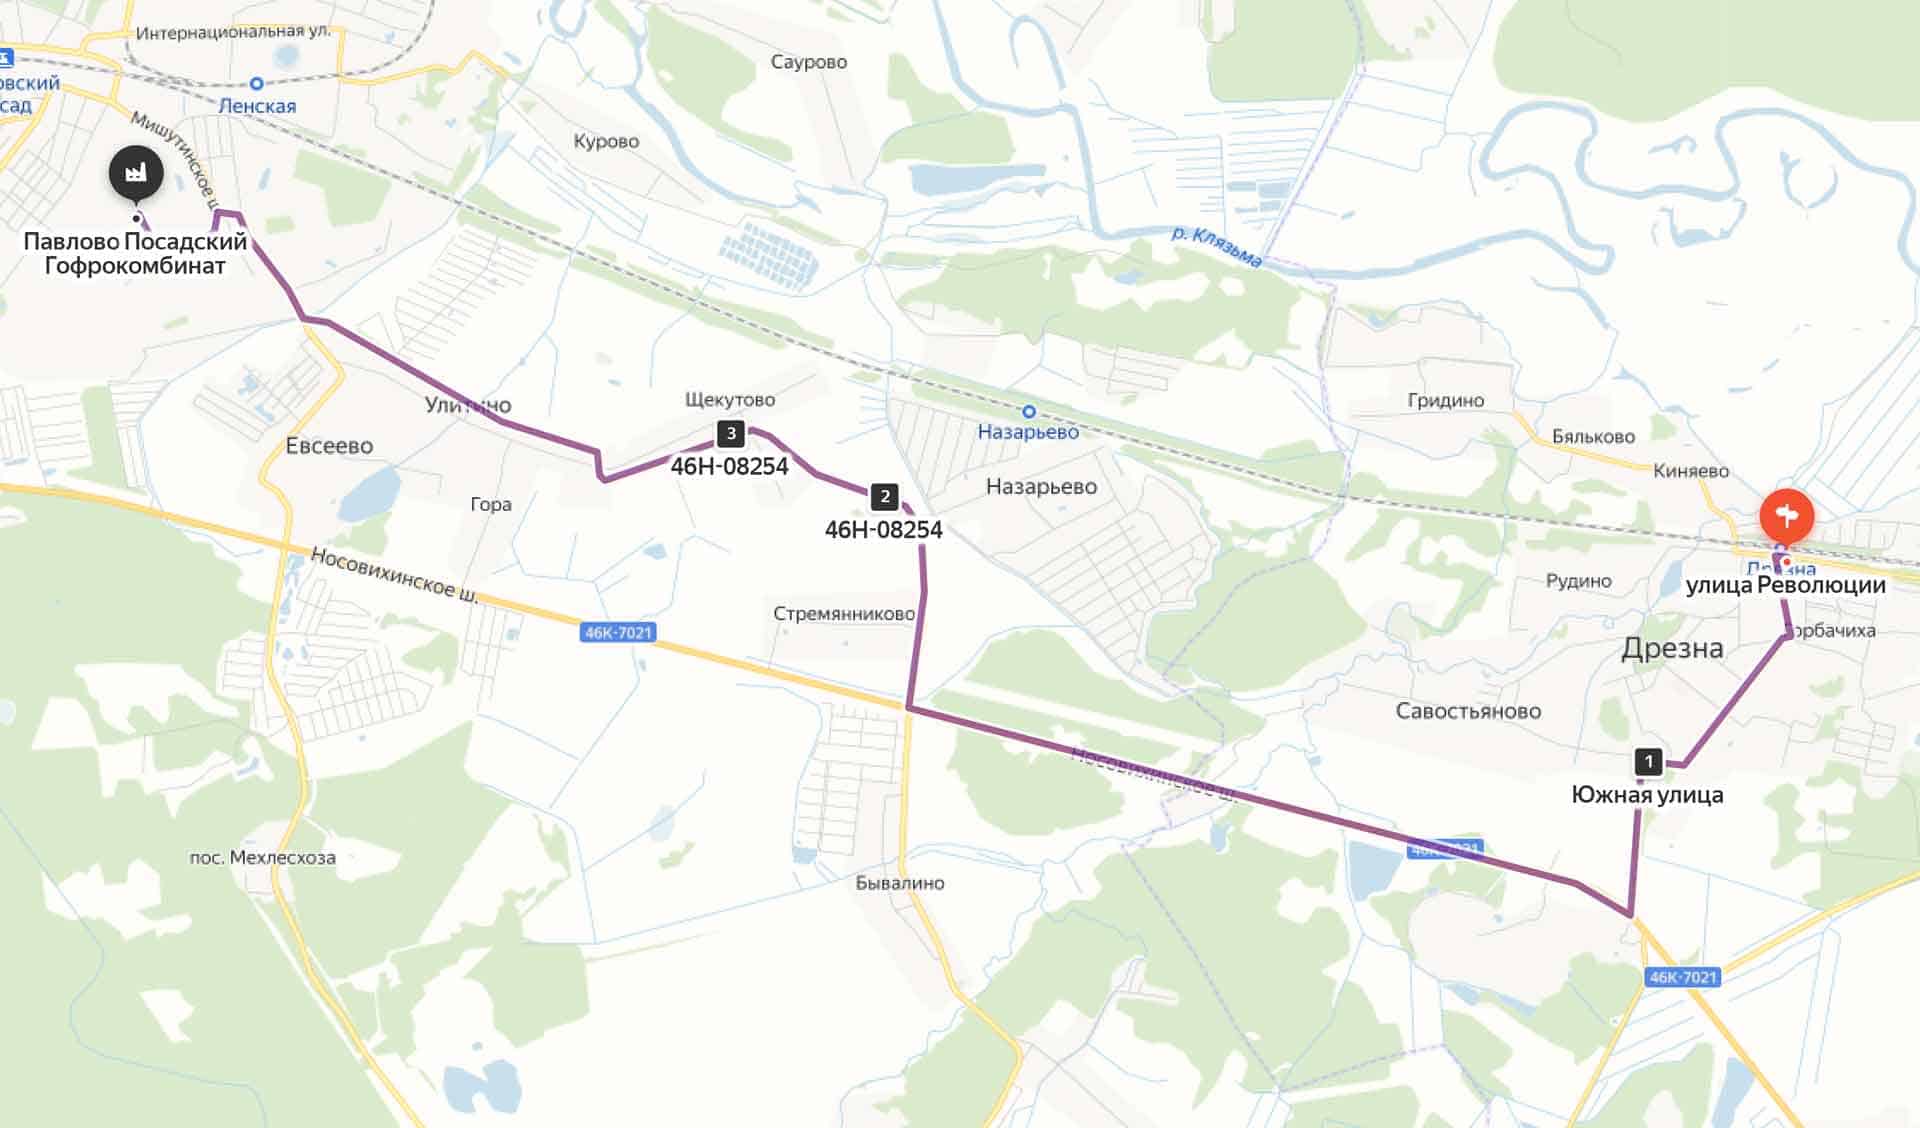 Схема проезда на Павлово-Посадский гофрокомбинат из Дрезны